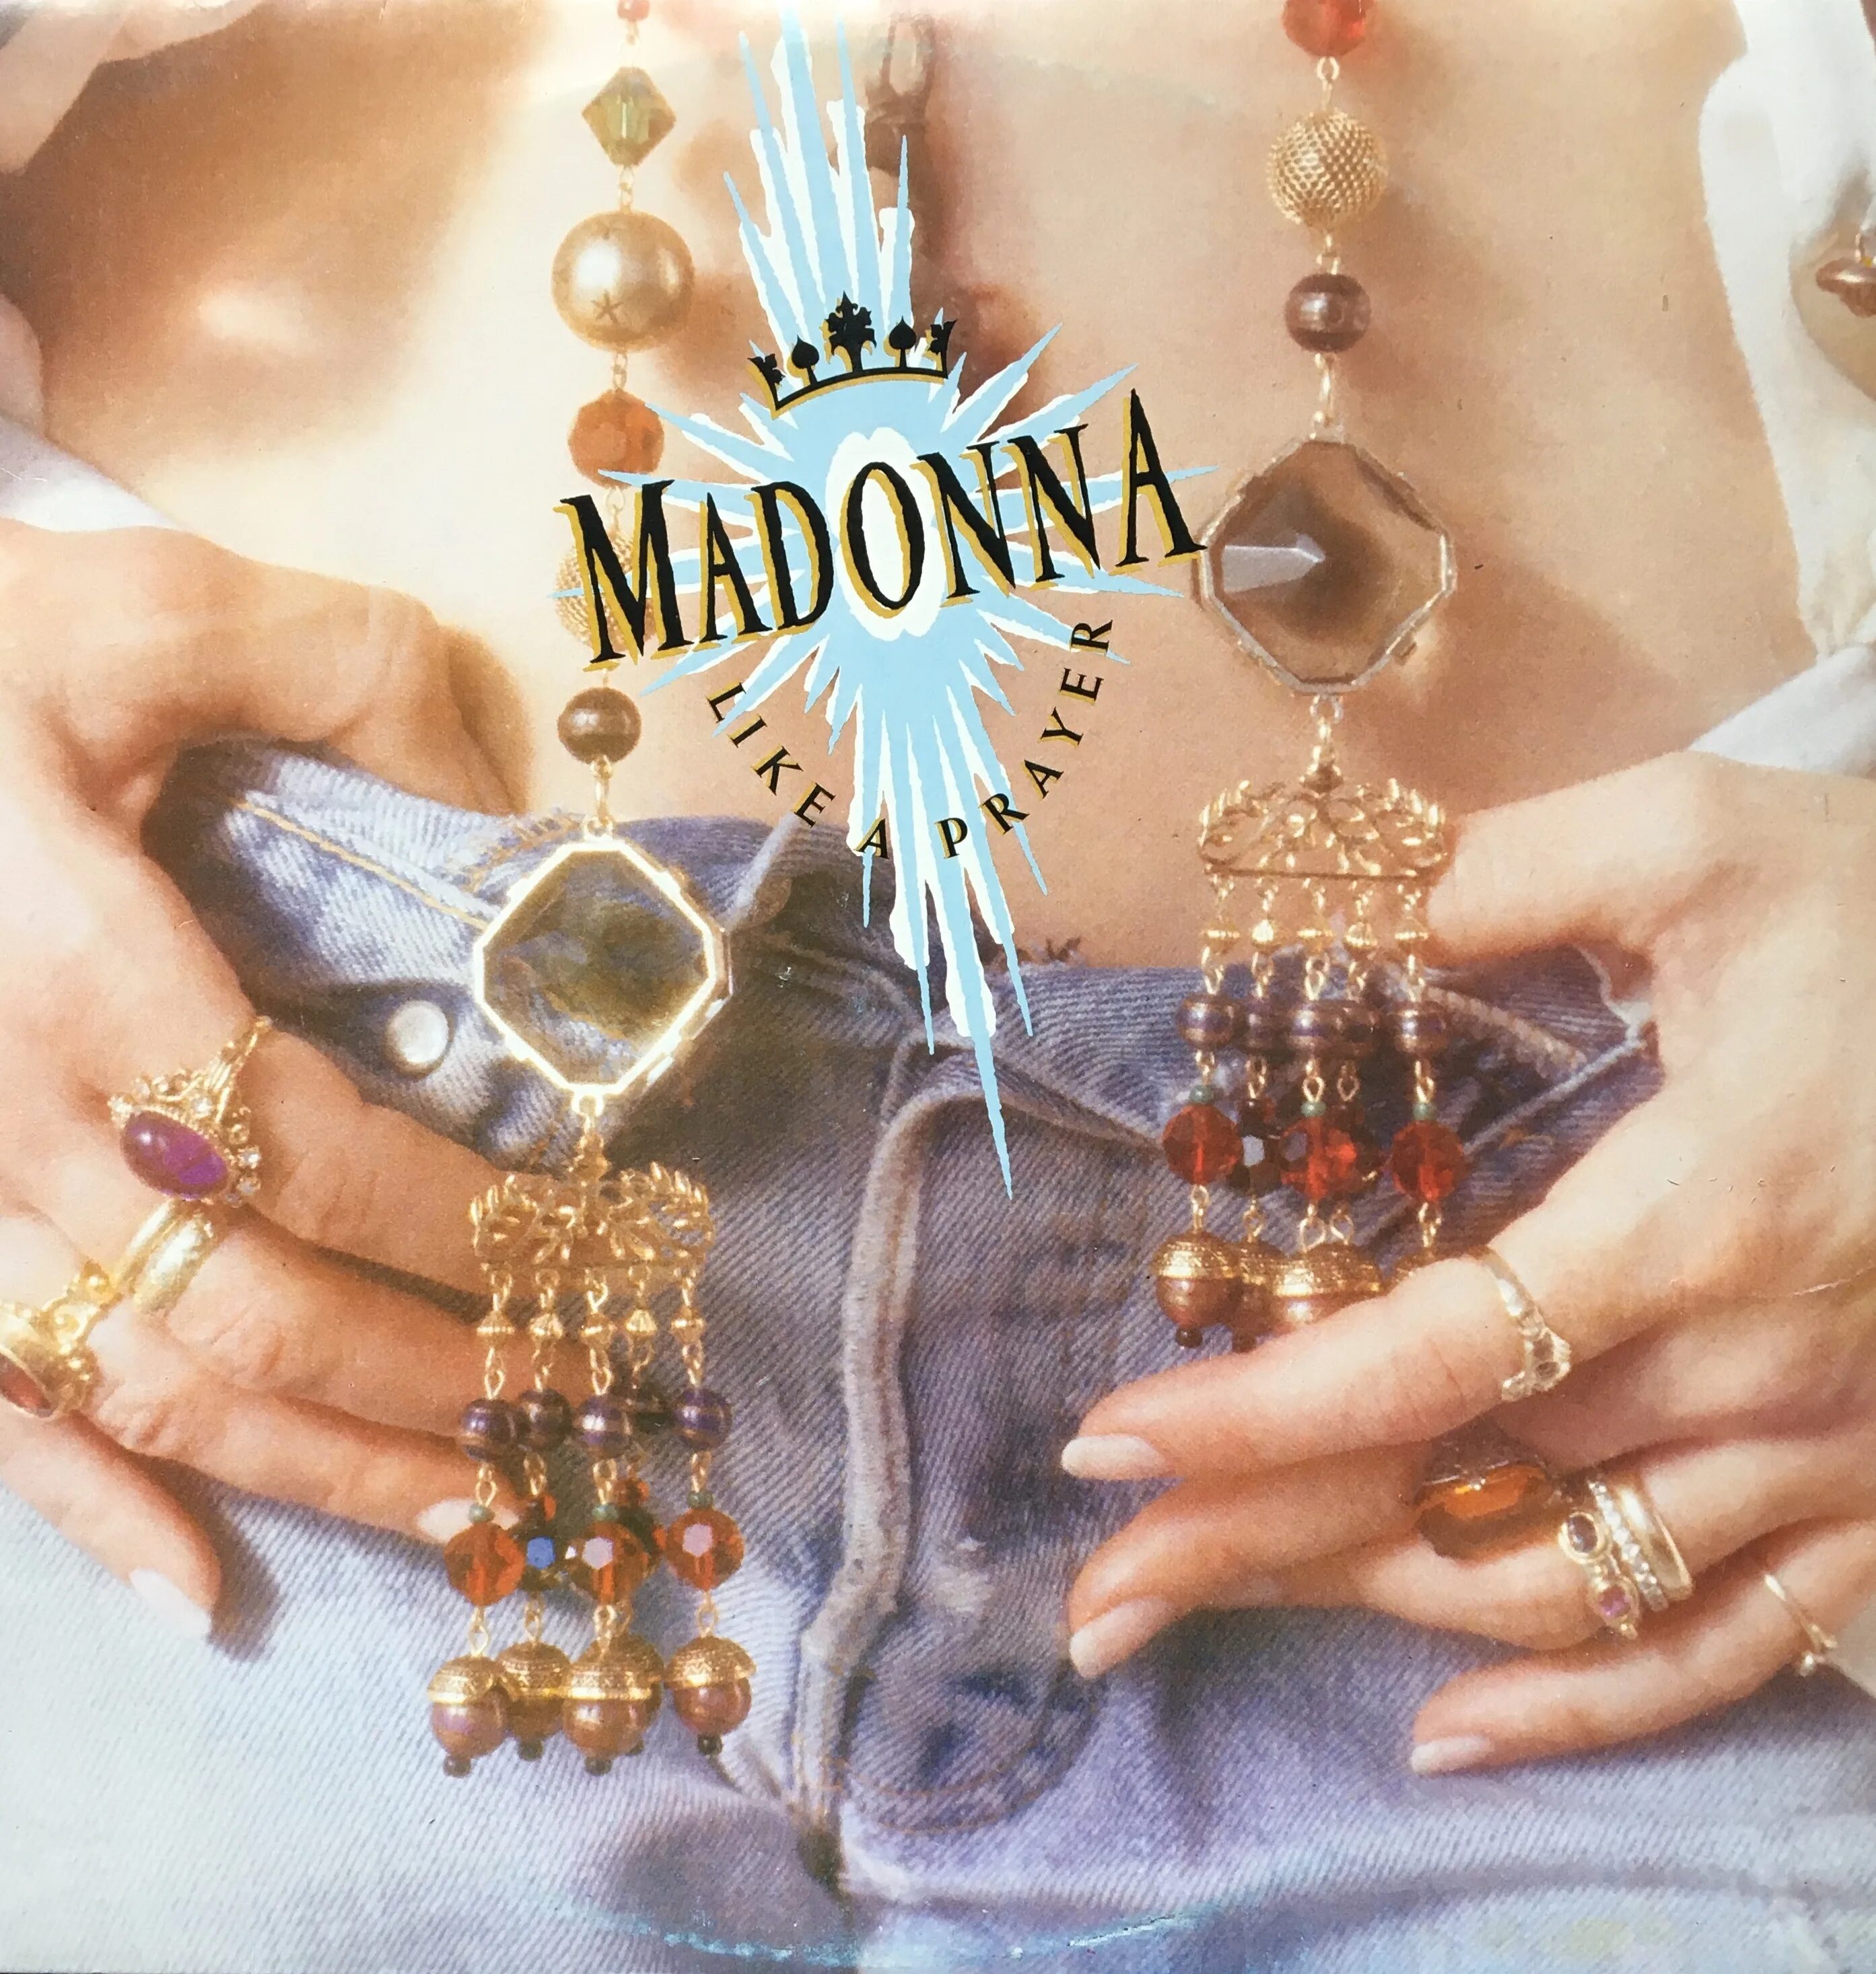 Like madonna песня. Madonna 1989 like a Prayer. Madonna like a Prayer album. Madonna like a Prayer обложка. Madonna обложки альбомов.